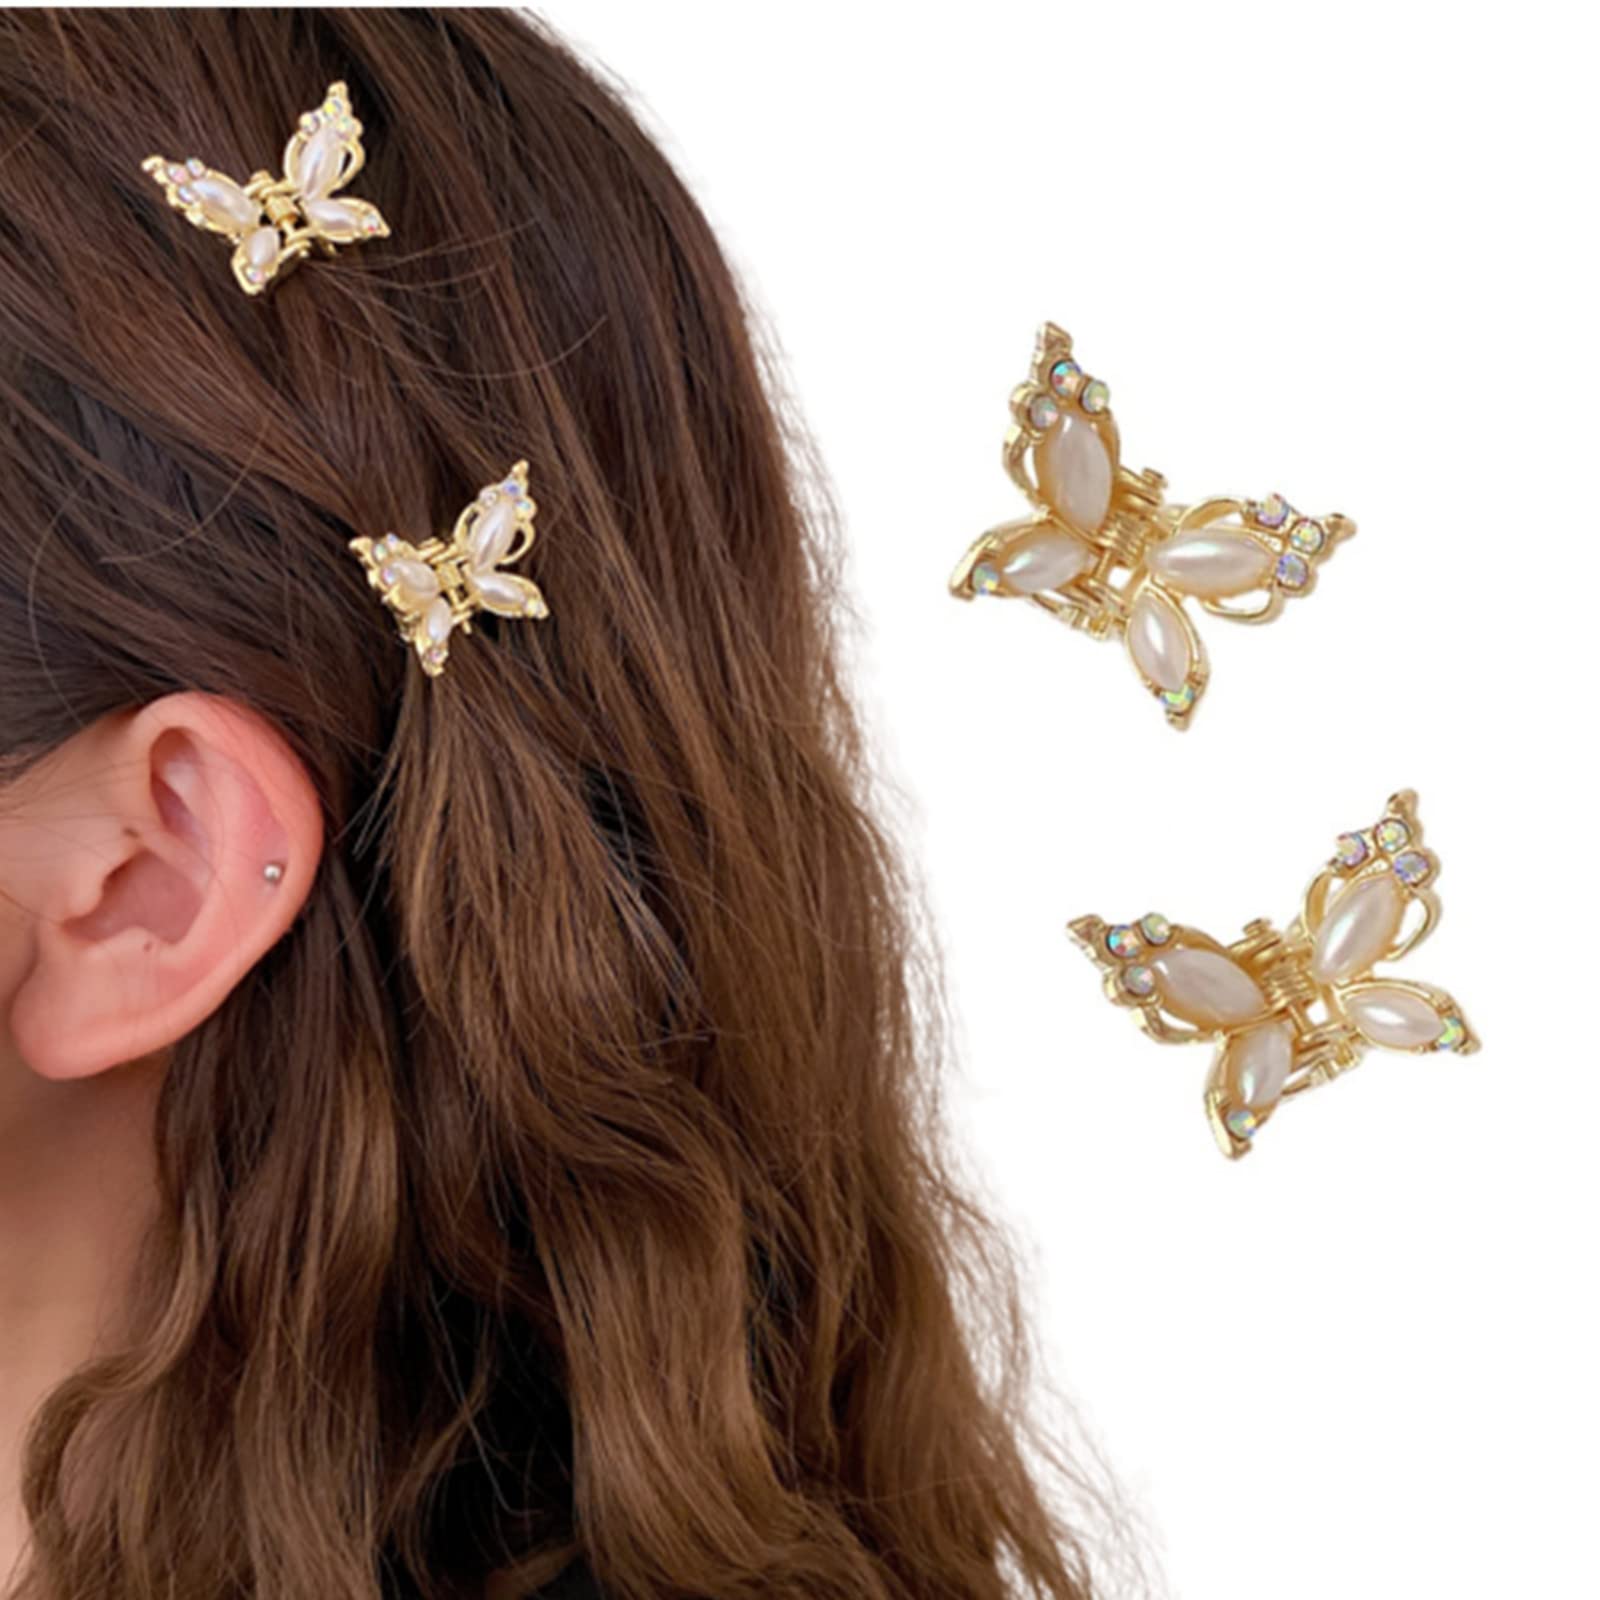 ヘアクリップ ミニ 蝶々 2個セット バンスクリップ 小さめ パール 髪留め クリップ 髪飾り 可愛い キラキラ ヘアアクセサリー ヘアピン